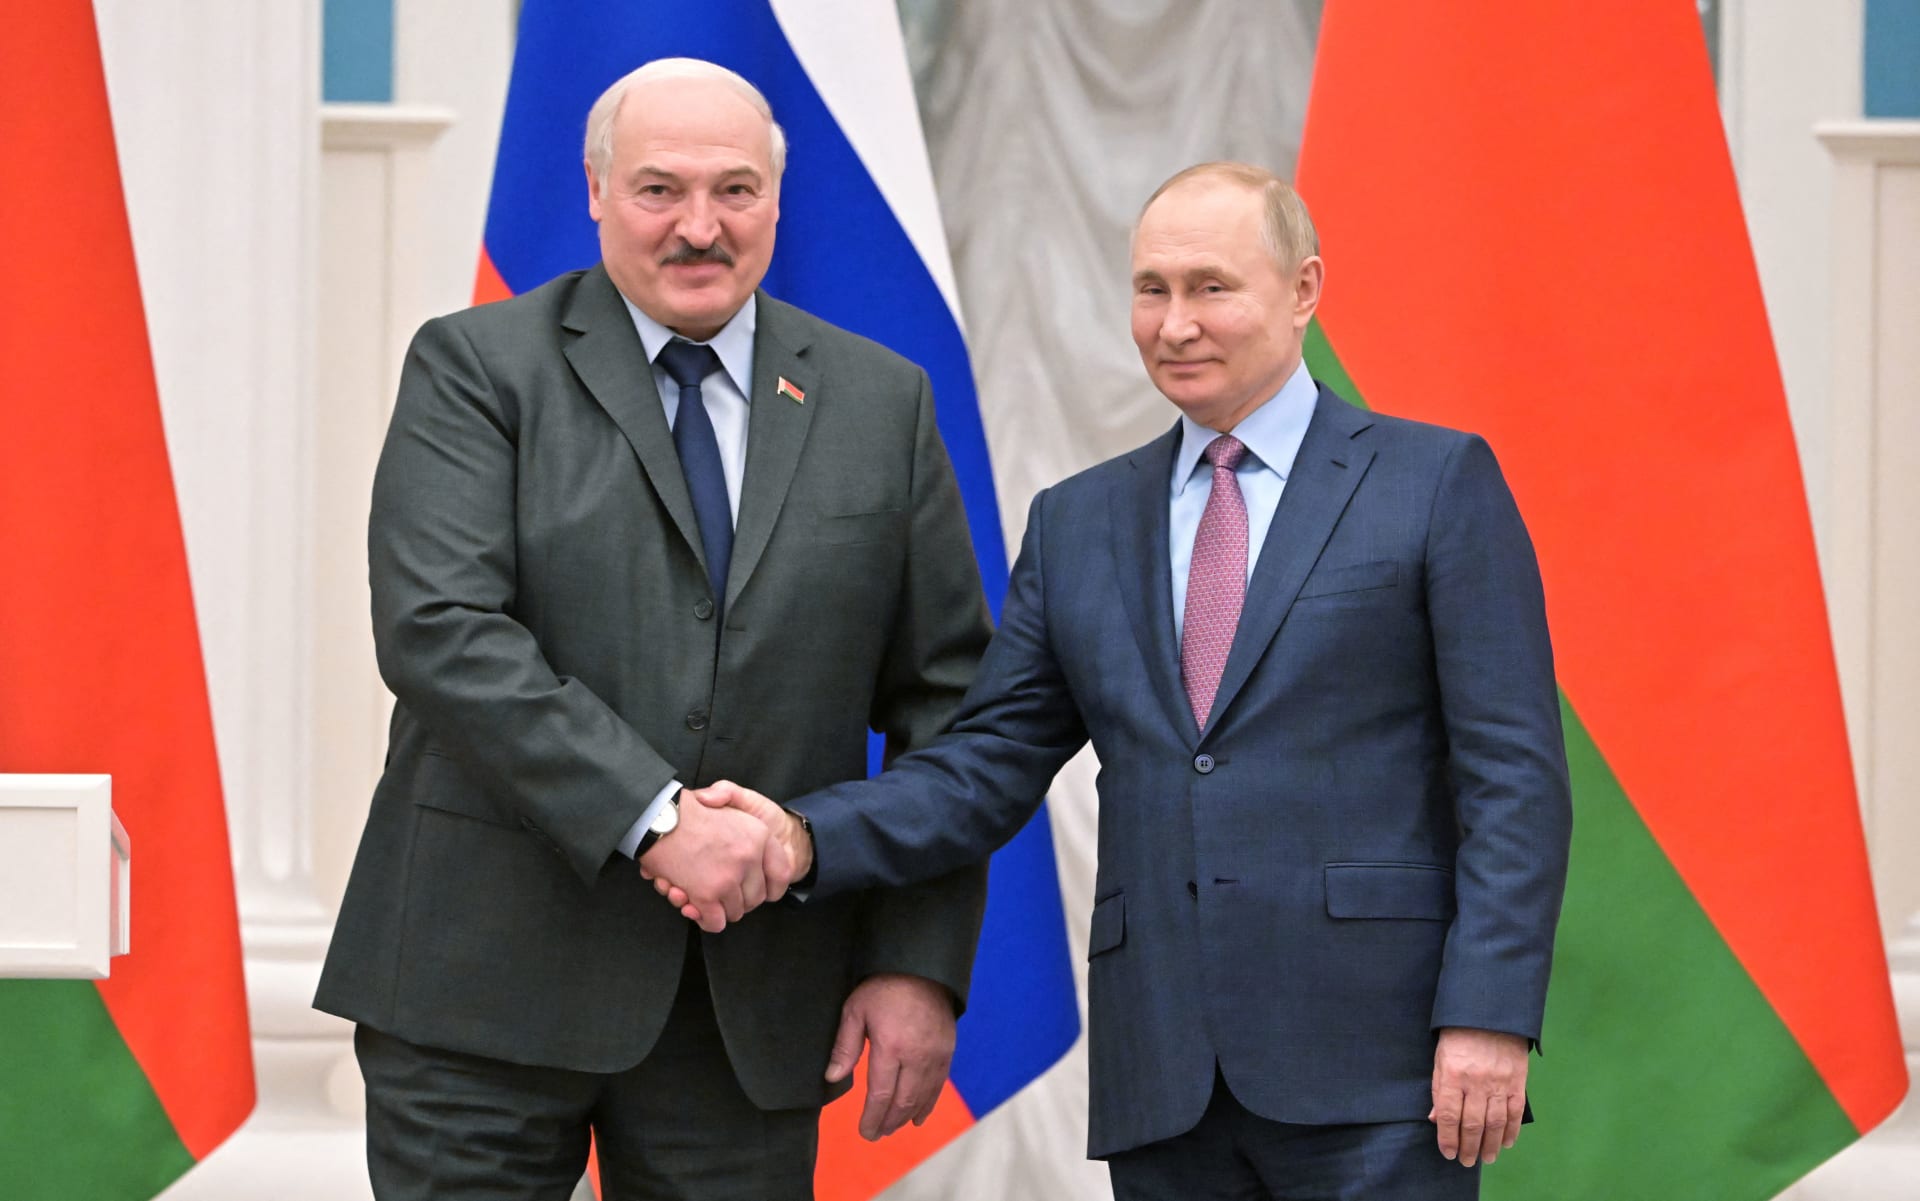 البرلمان الأوروبي: رئيس بيلاروسيا "شريك" في جرائم حرب ارتكبها روسيا